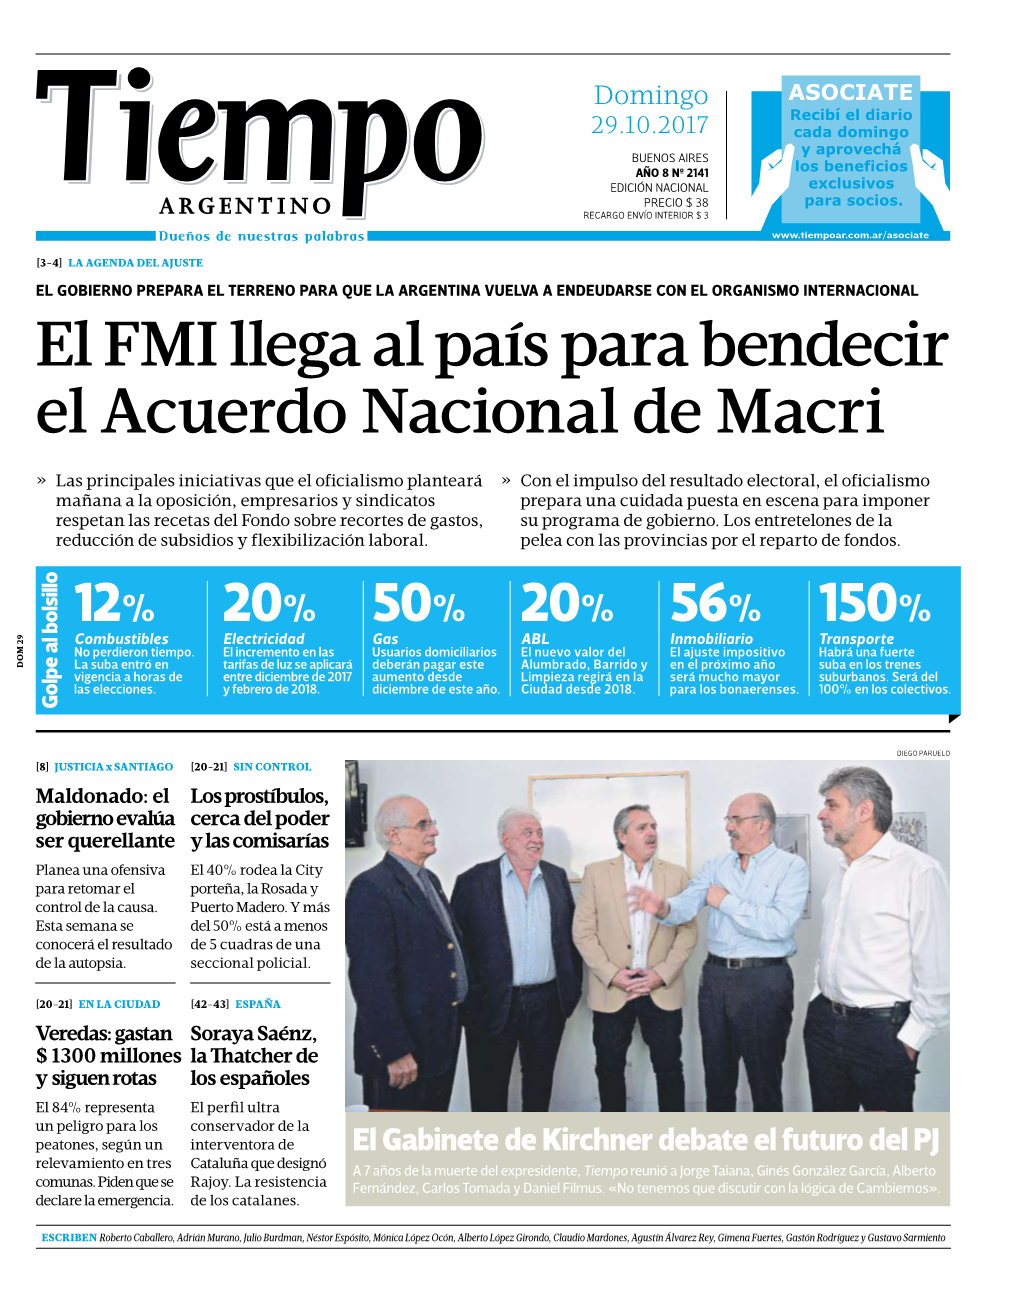 El FMI Llega Al País Para Bendecir El Acuerdo Nacional De Macri